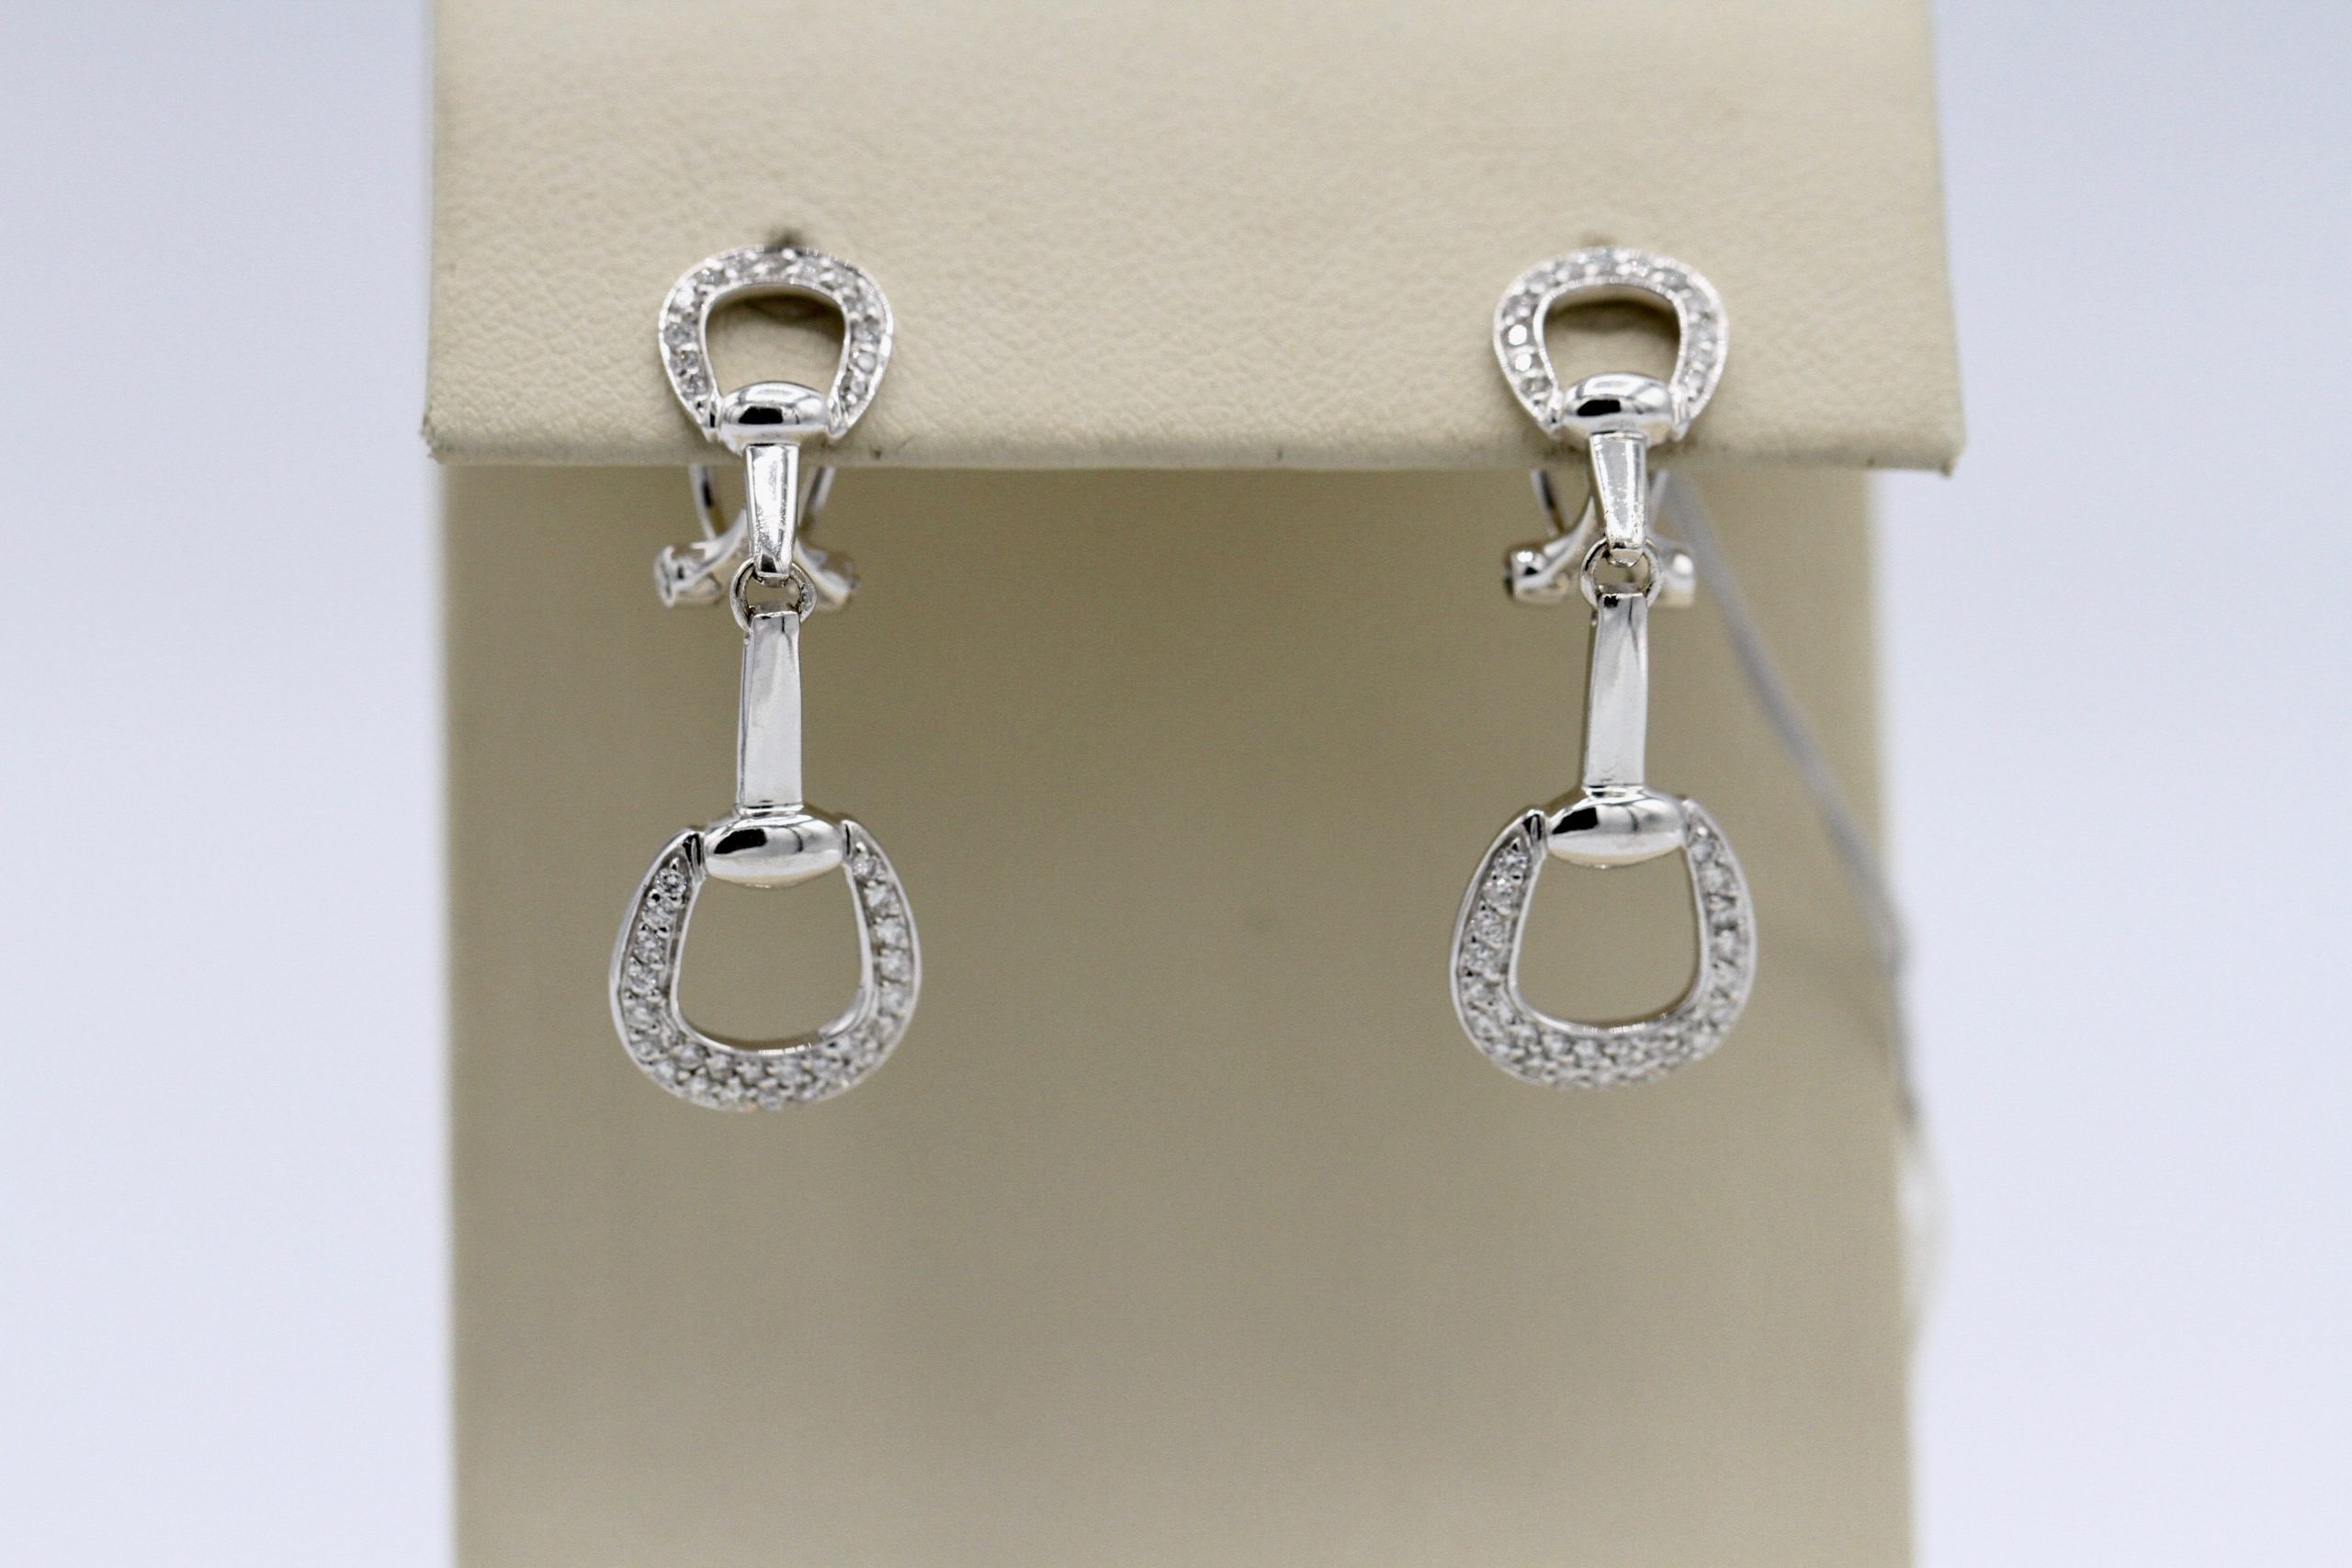 Silver horseshoes earrings